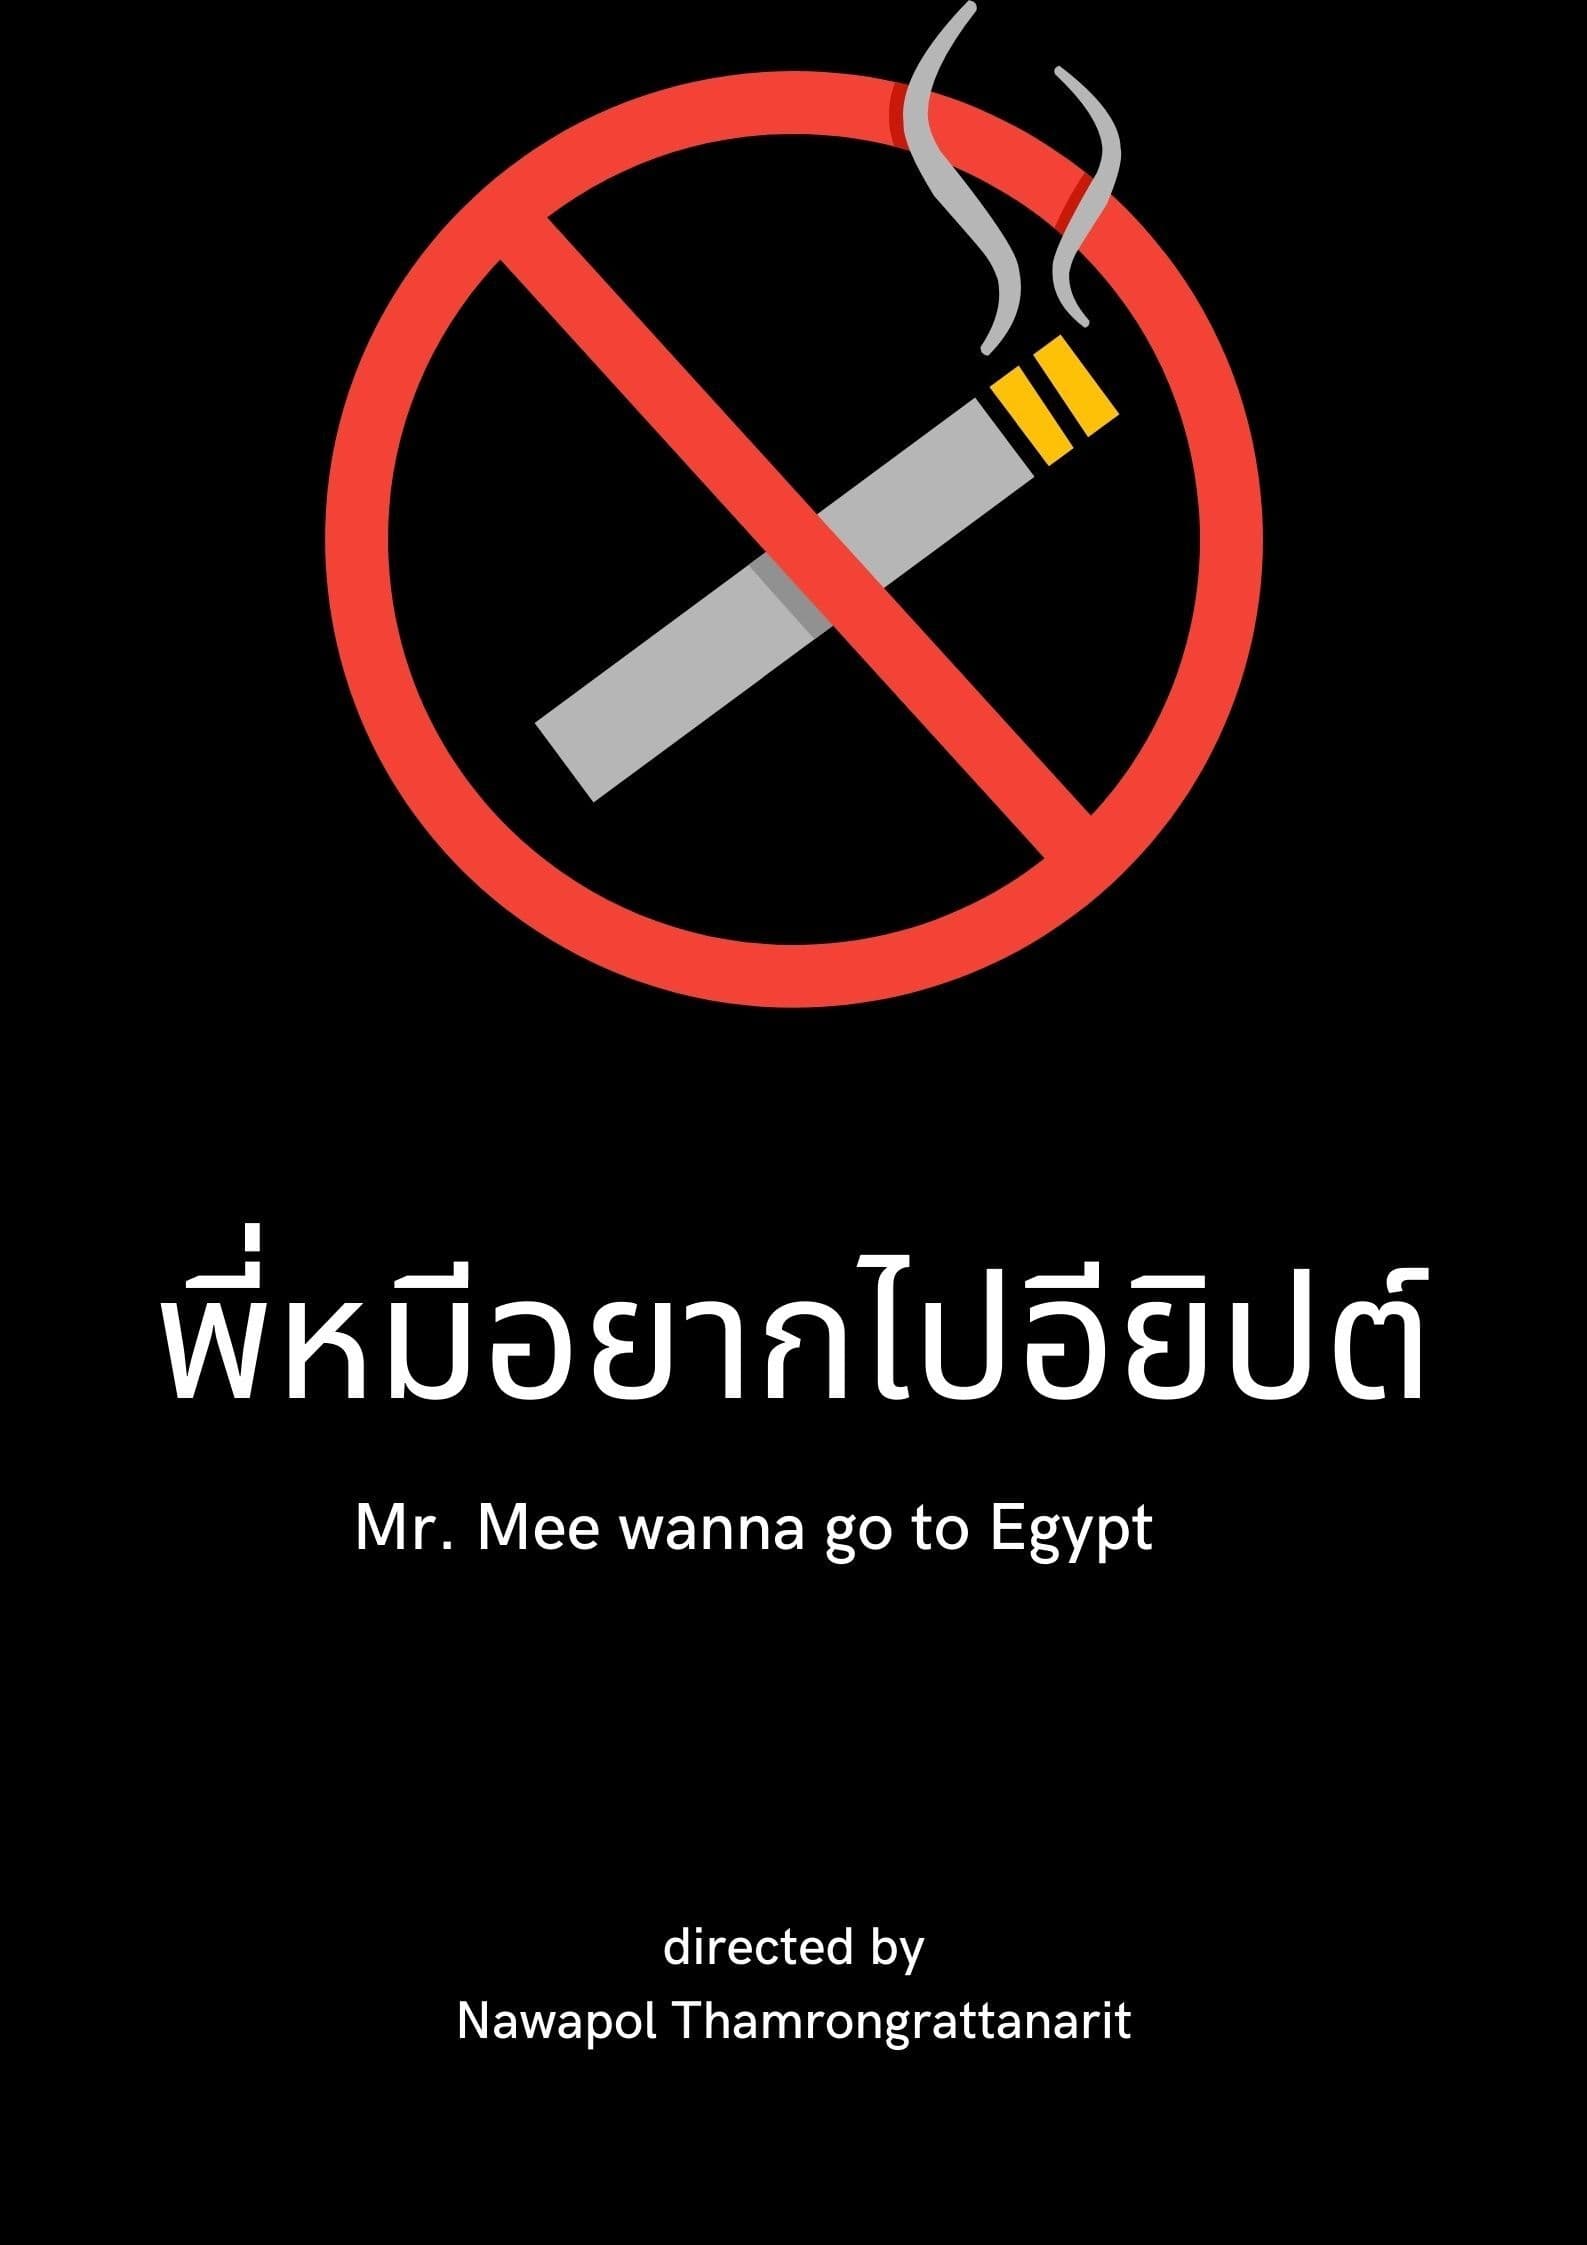 Mr. Mee wanna go to Egypt